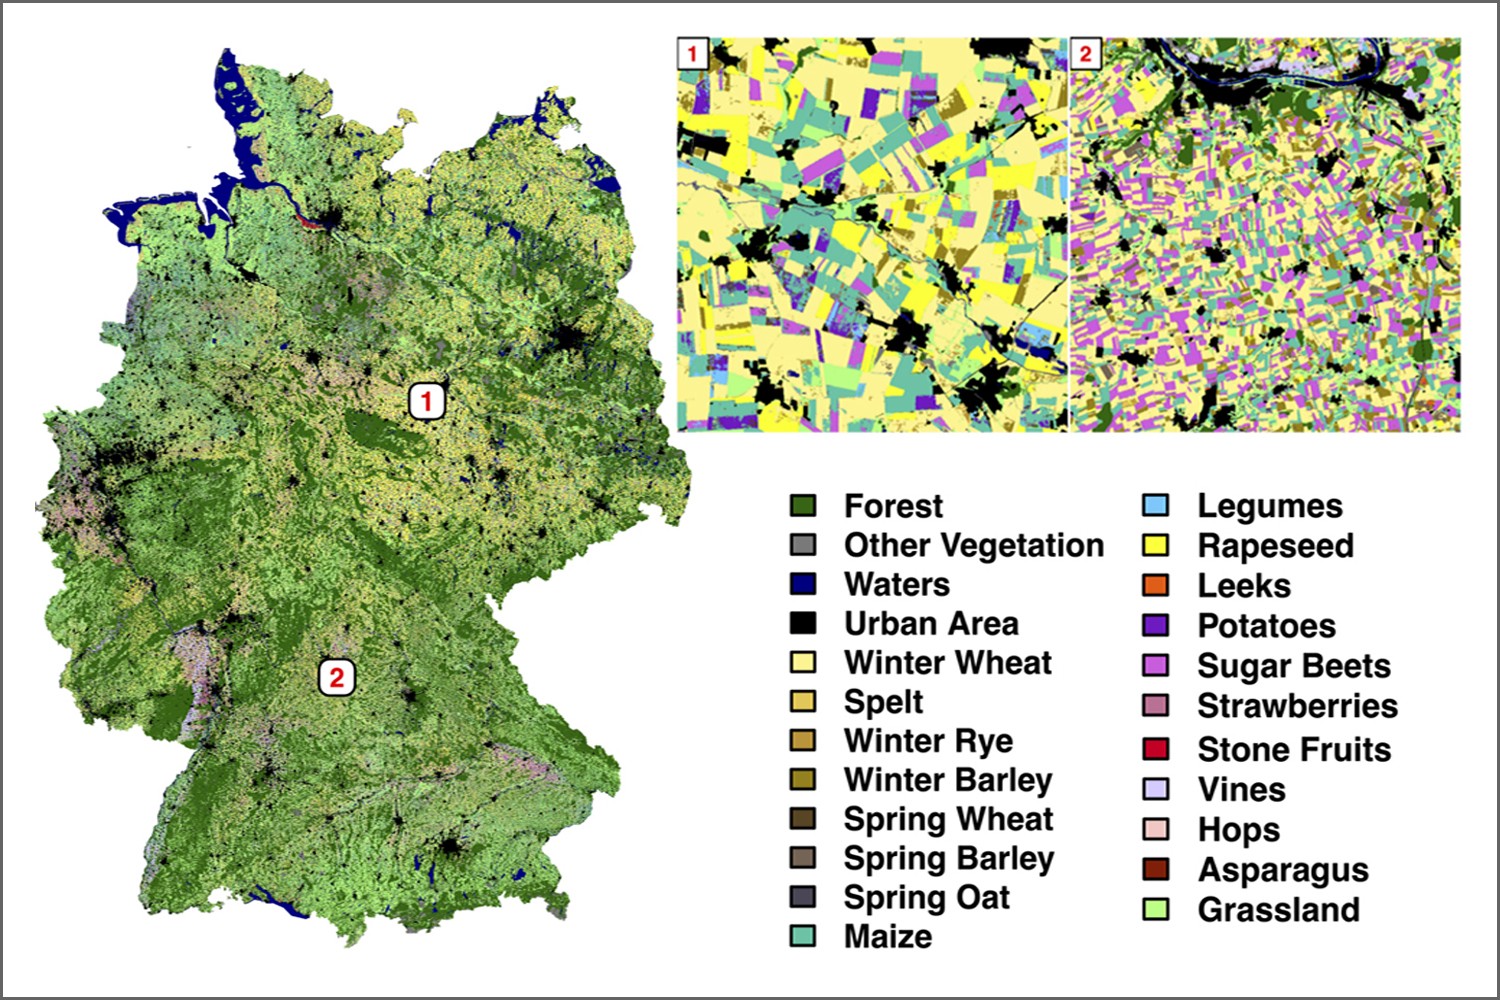 Deutschlandkarte Landbedeckung. Der Algorithmus identifiziert 19 verschiedene Feldfruchtarten mit einer Genauigkeit von 88 Prozent.